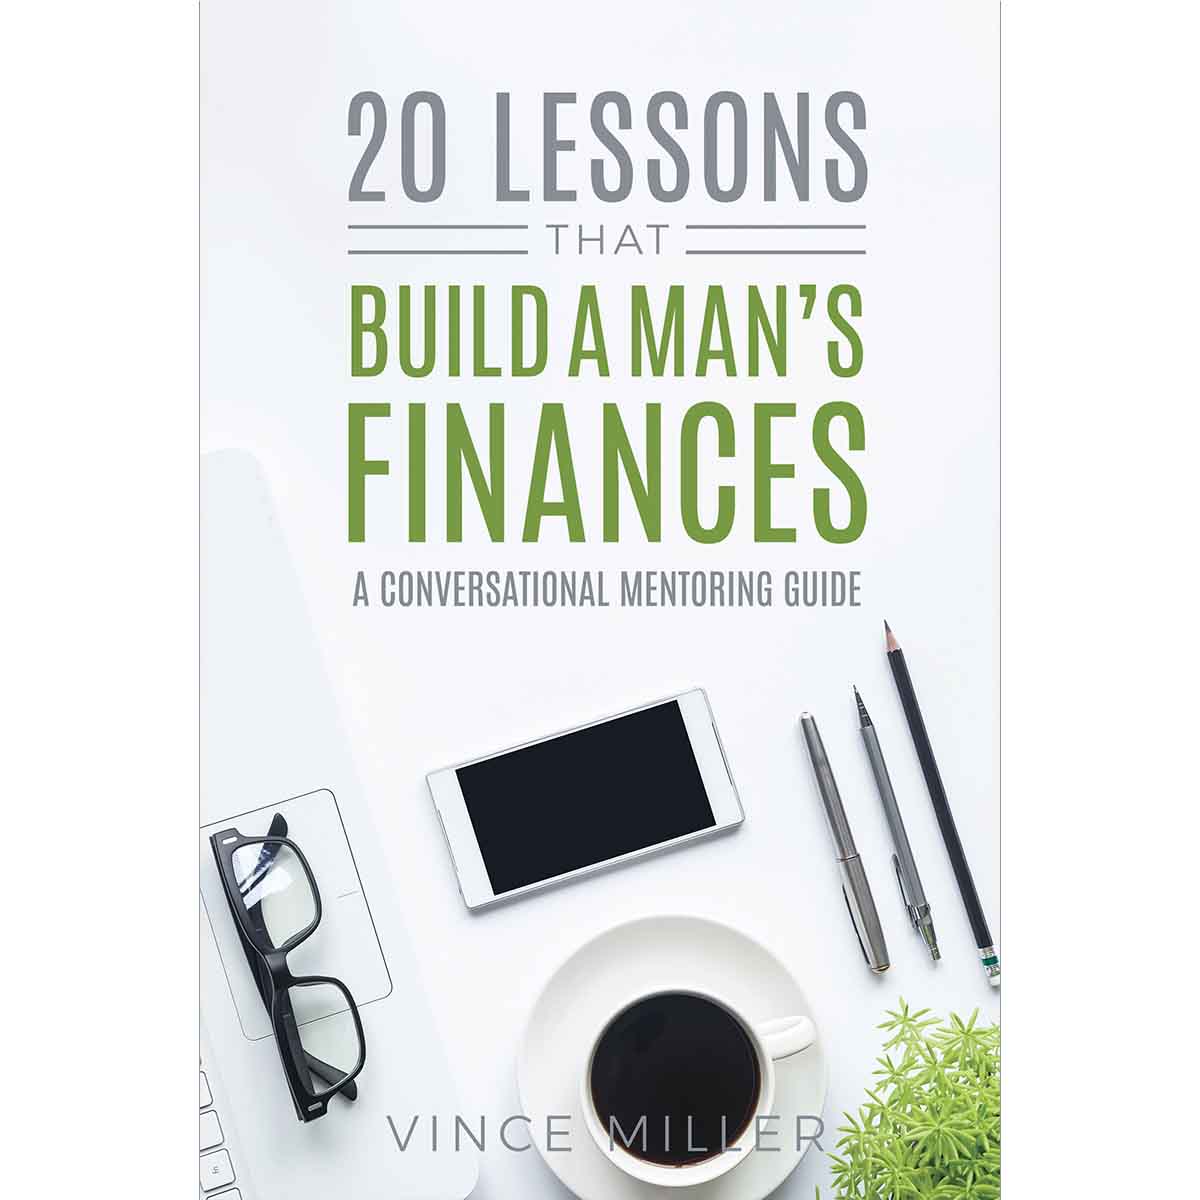 20 Lessons that Build a Man's Finances